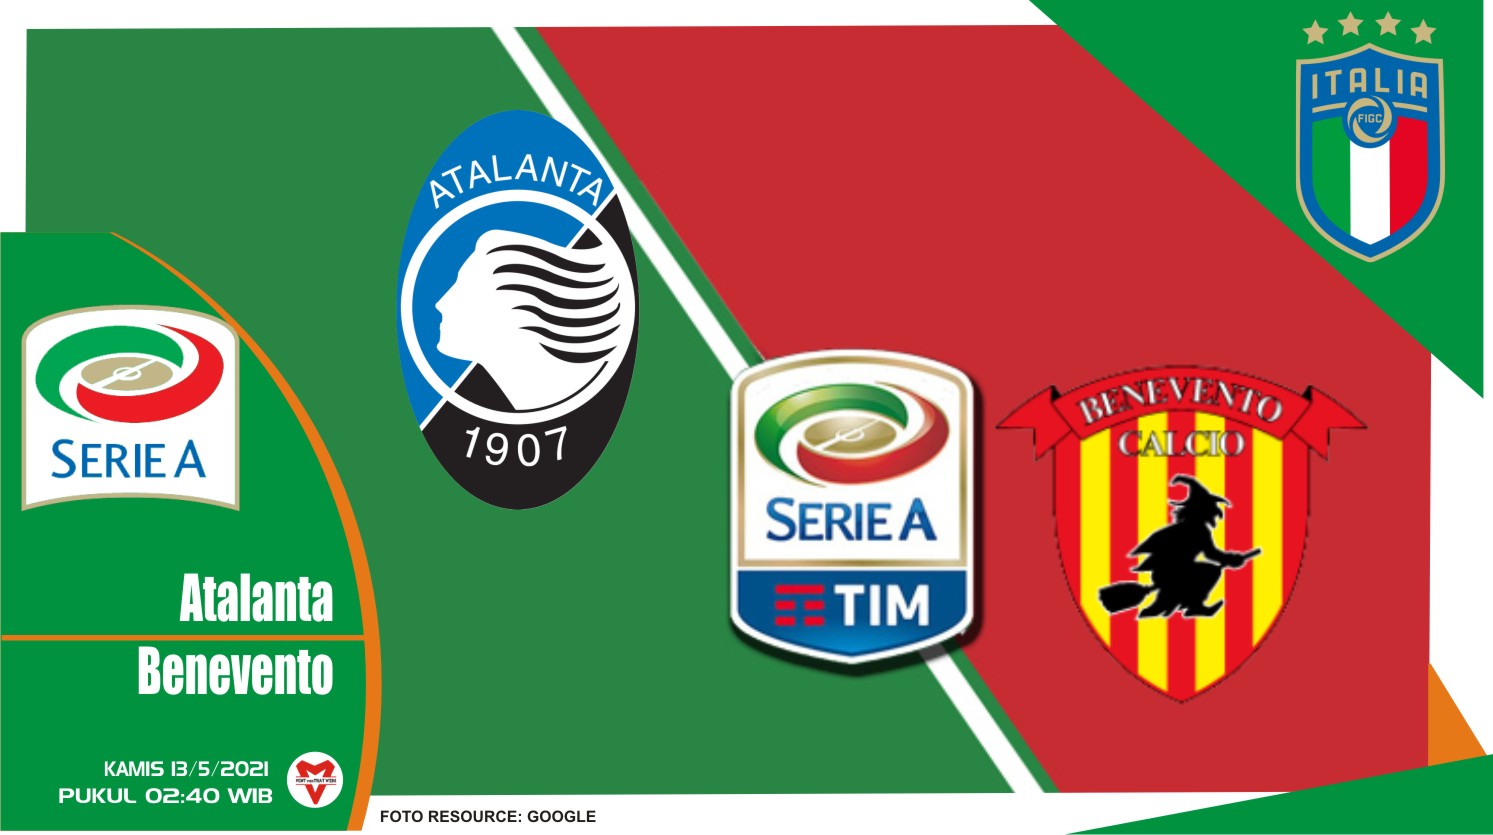 Prediksi Liga Italia: Atalanta vs Benevento - 13 Mei 2021